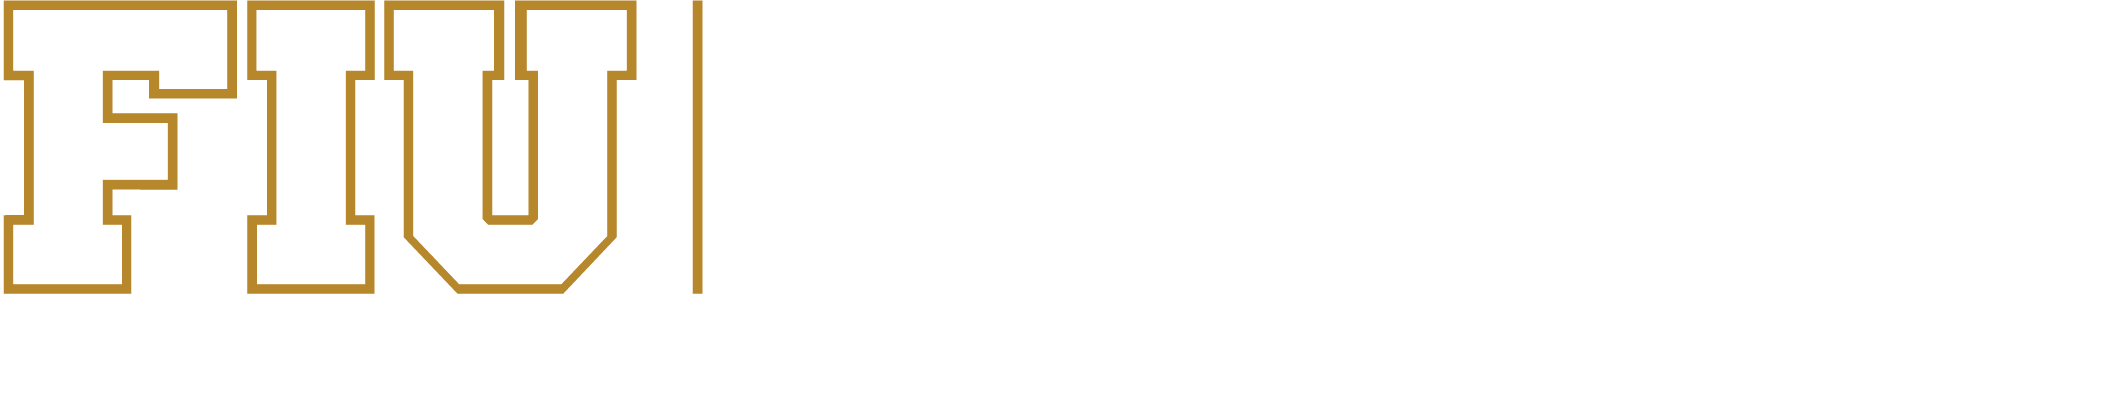 Landon-Undergrad-hrz-FIU-color-rev